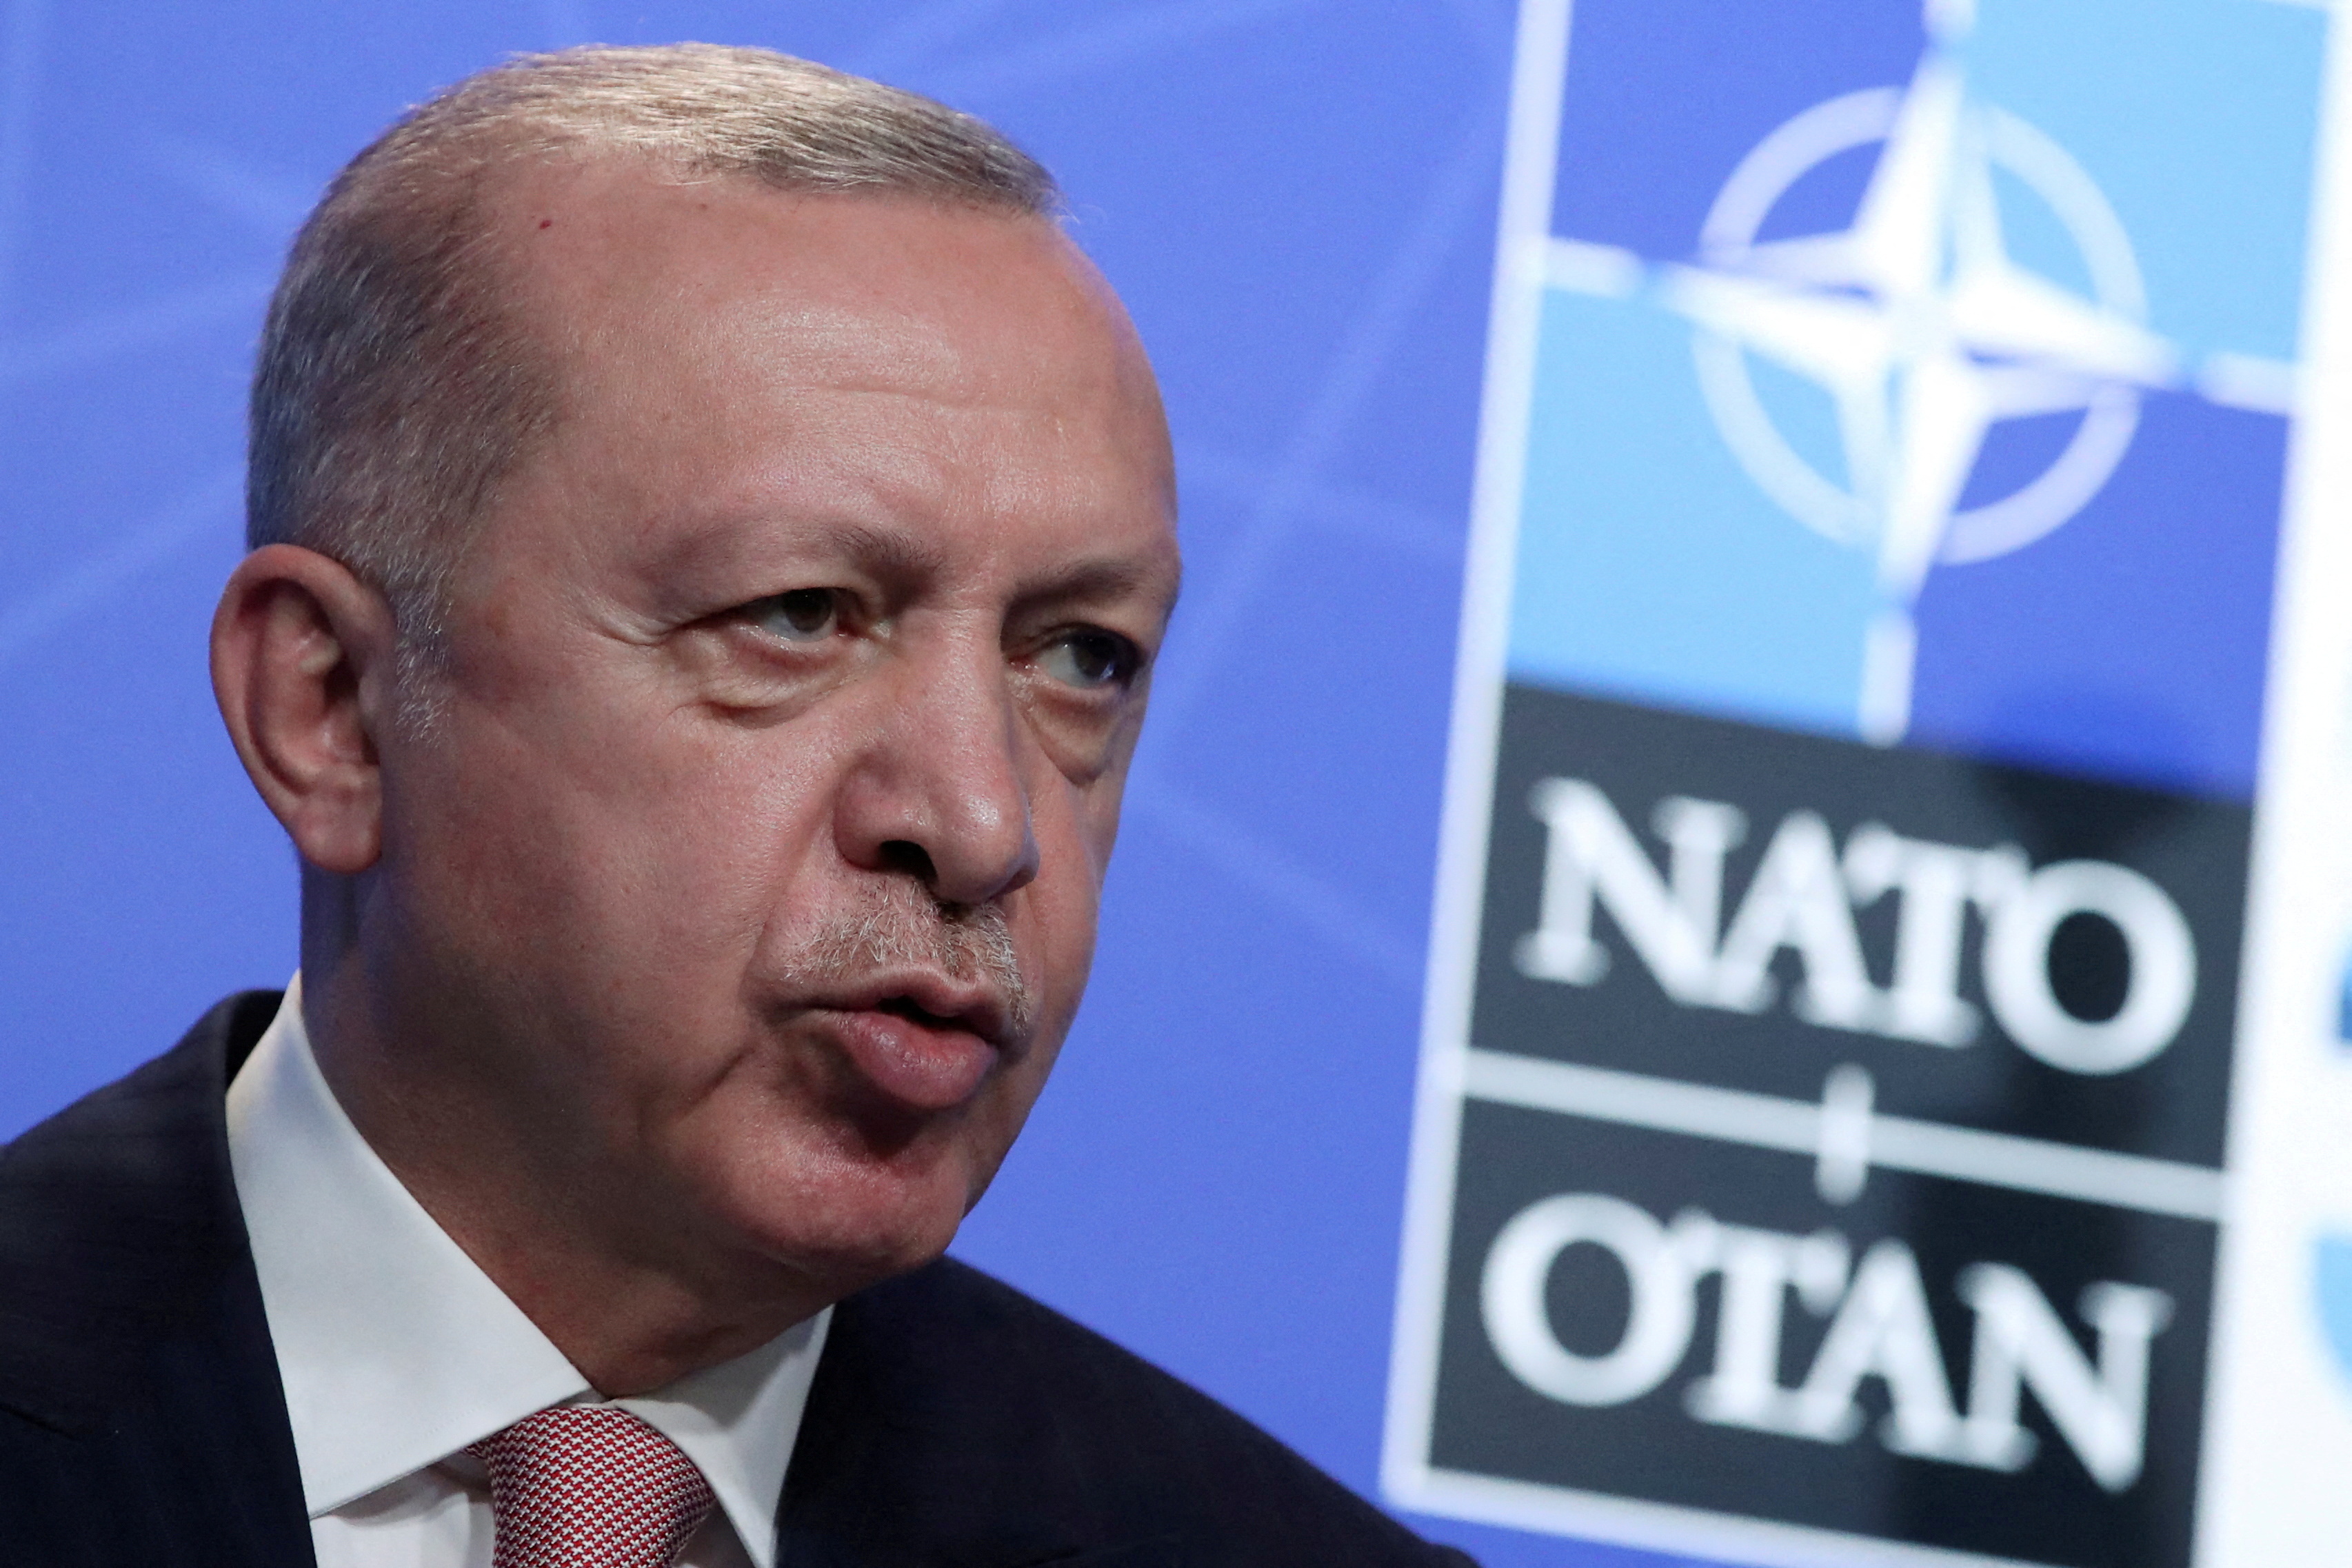 Erdogan med NATO:s logotyp som bakgrund